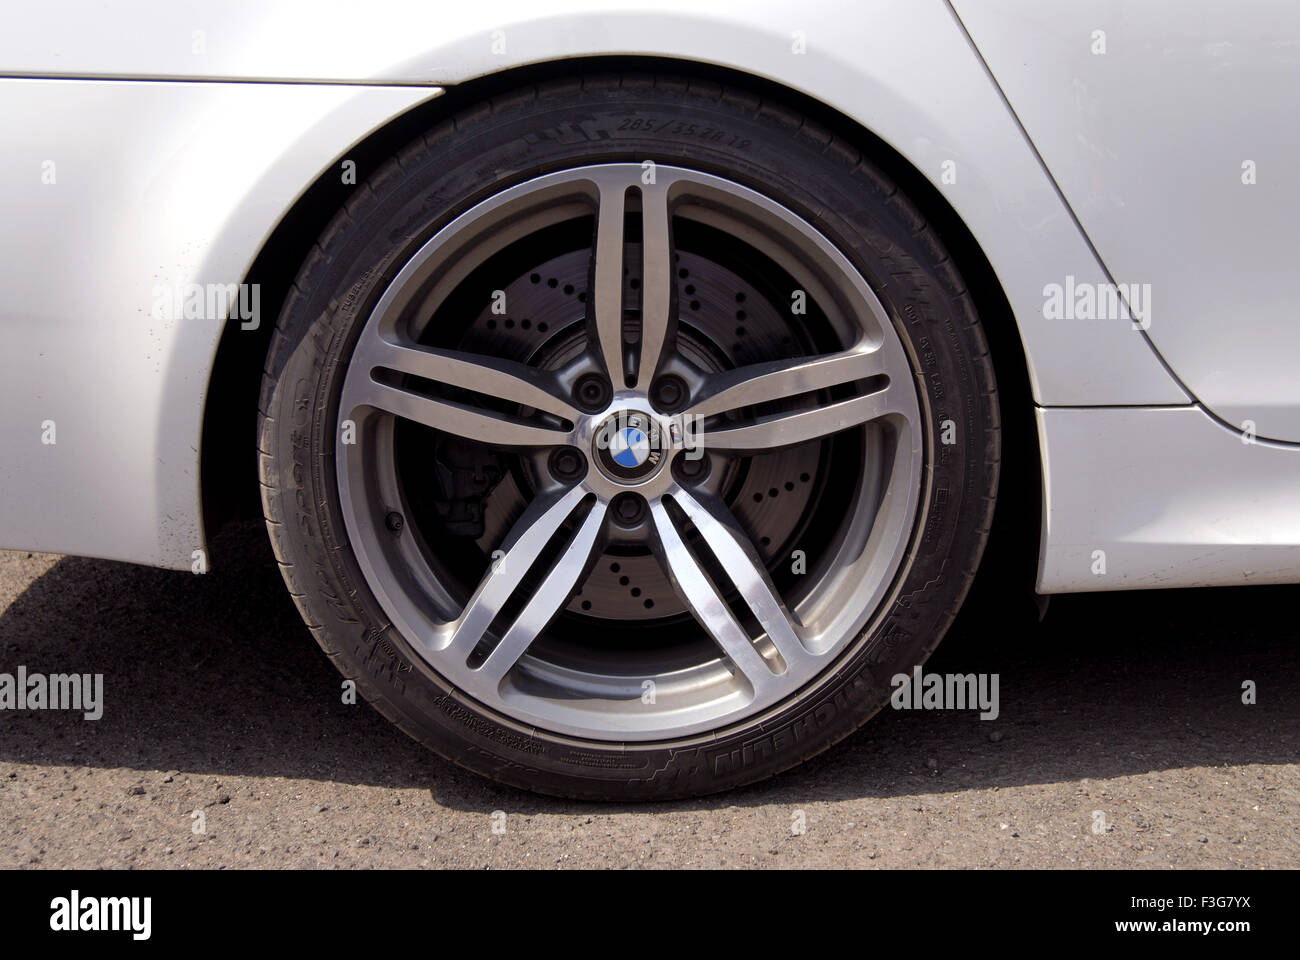 Primo piano del copriruota per auto BMW Foto Stock